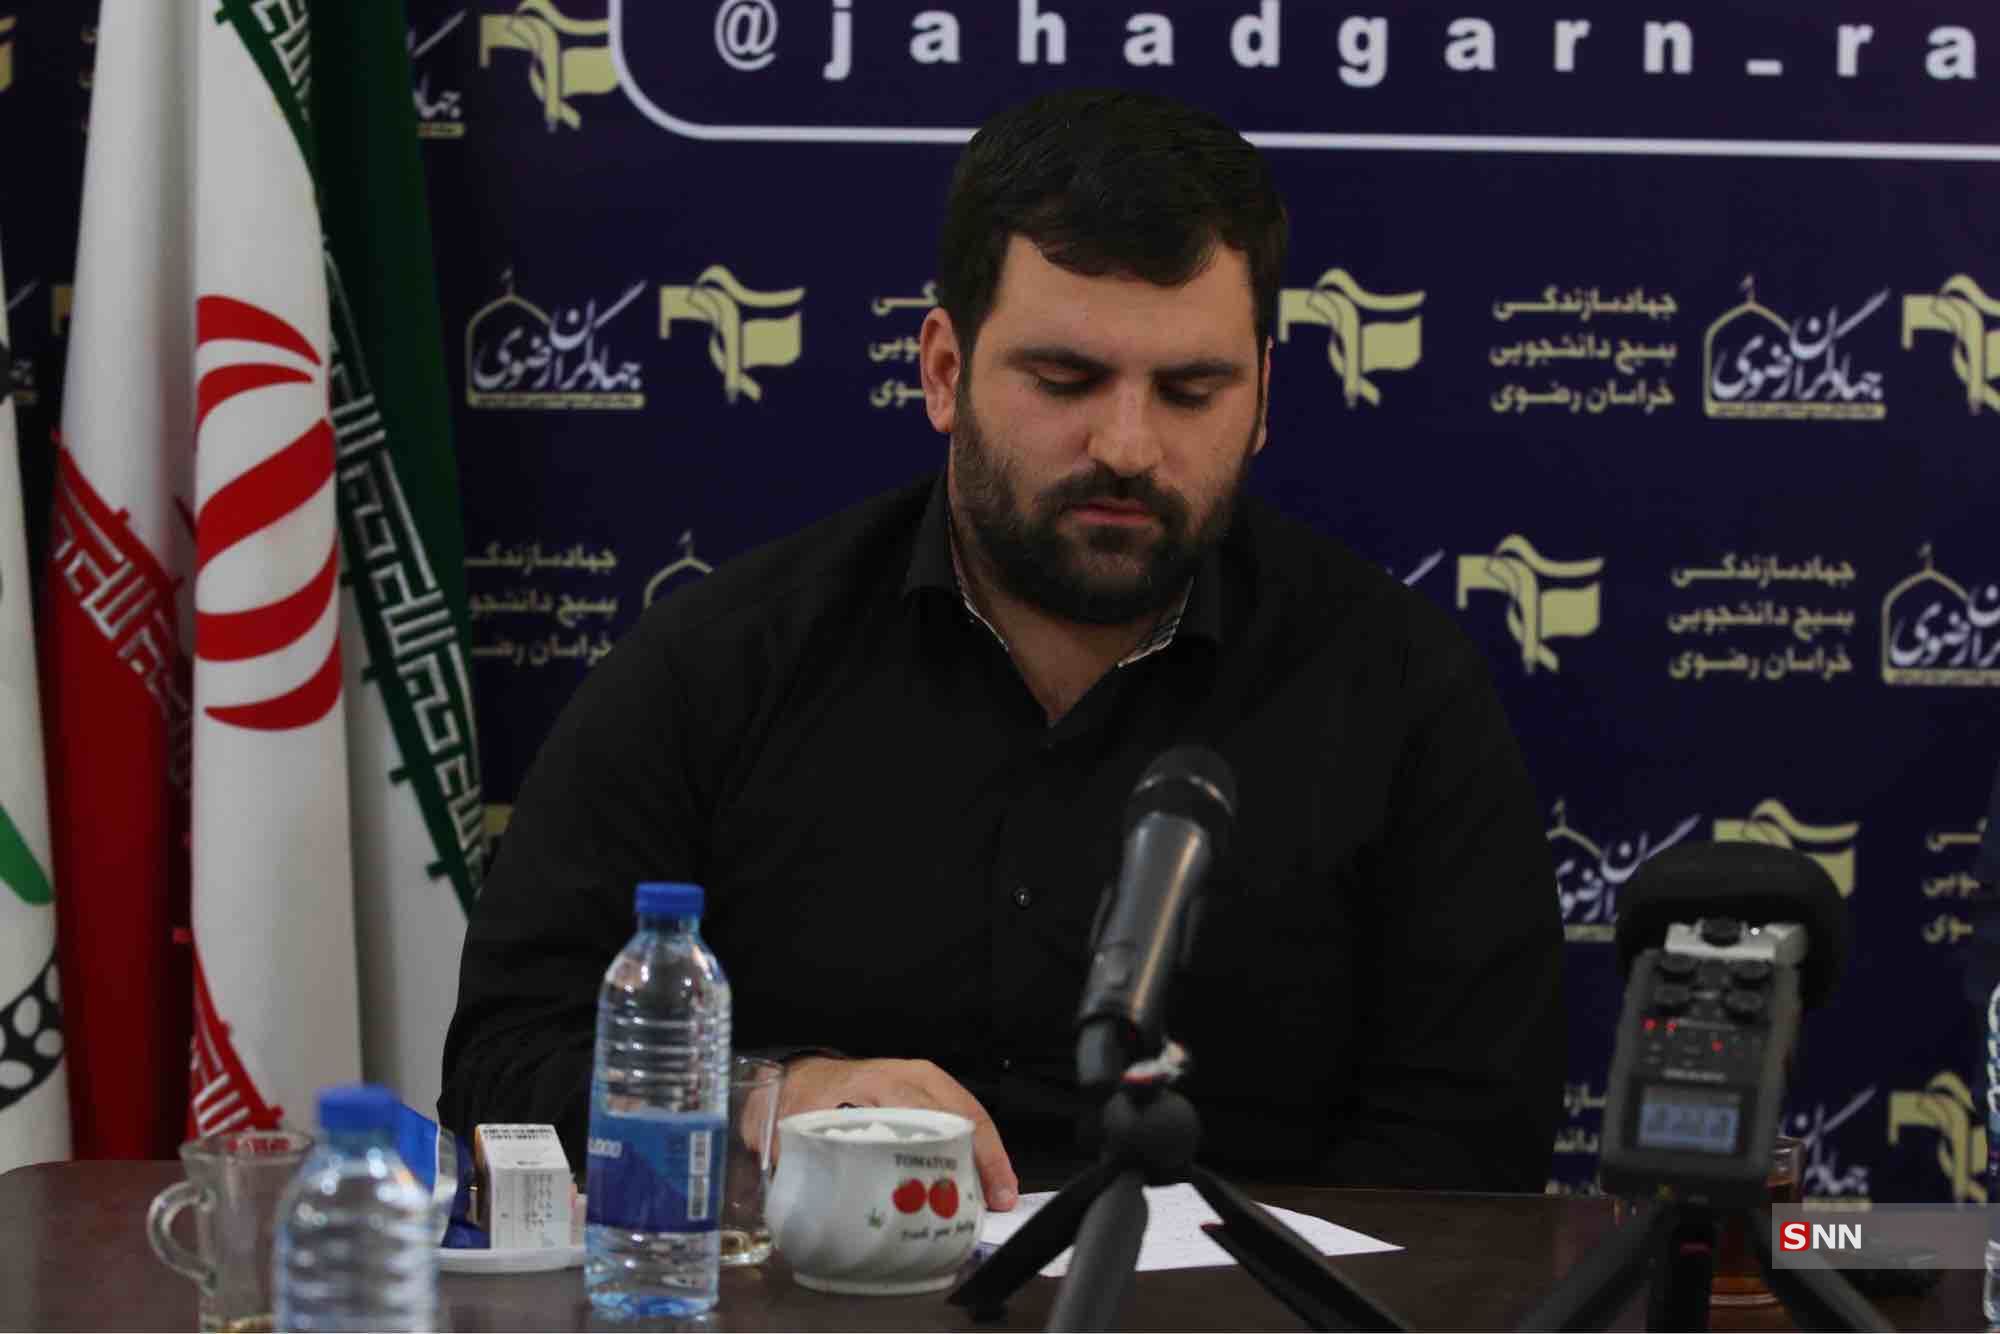 مسئولین دولتی از ظرفیت اردوهای جهادی استفاده کنند/ستاد پشتیبانی از اردوهای جهادی در دو سال گذشته برگزار نشده است